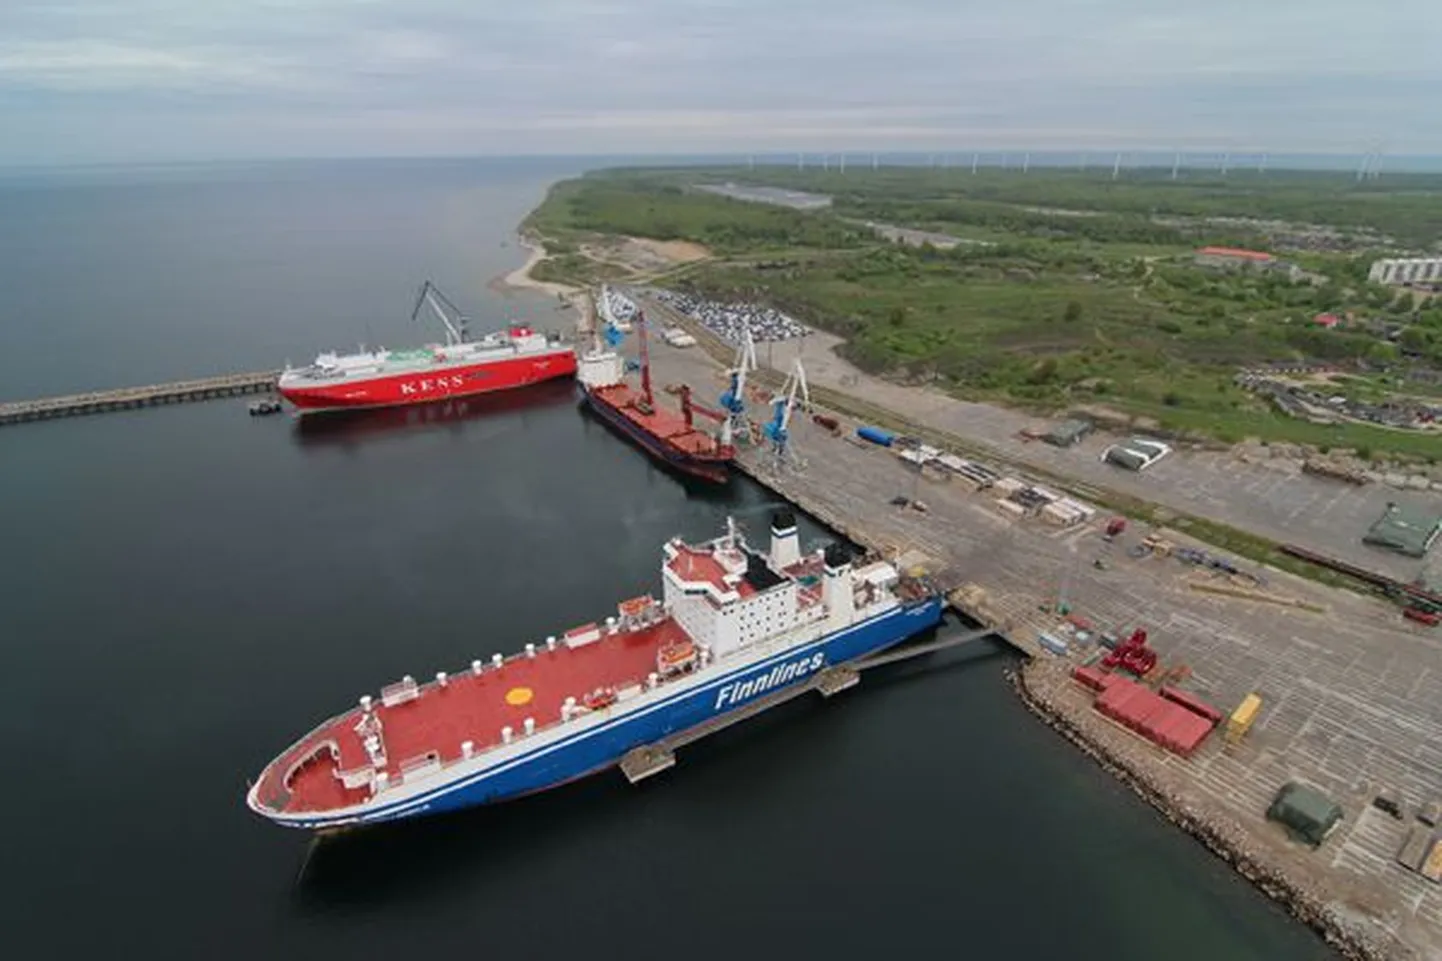 Tänaseks Tallinki omandisse ja Eesti lipu alla jõudnud MS Sailor, endise nimega Finnsailor Paldiski sadamas 2015. aastal